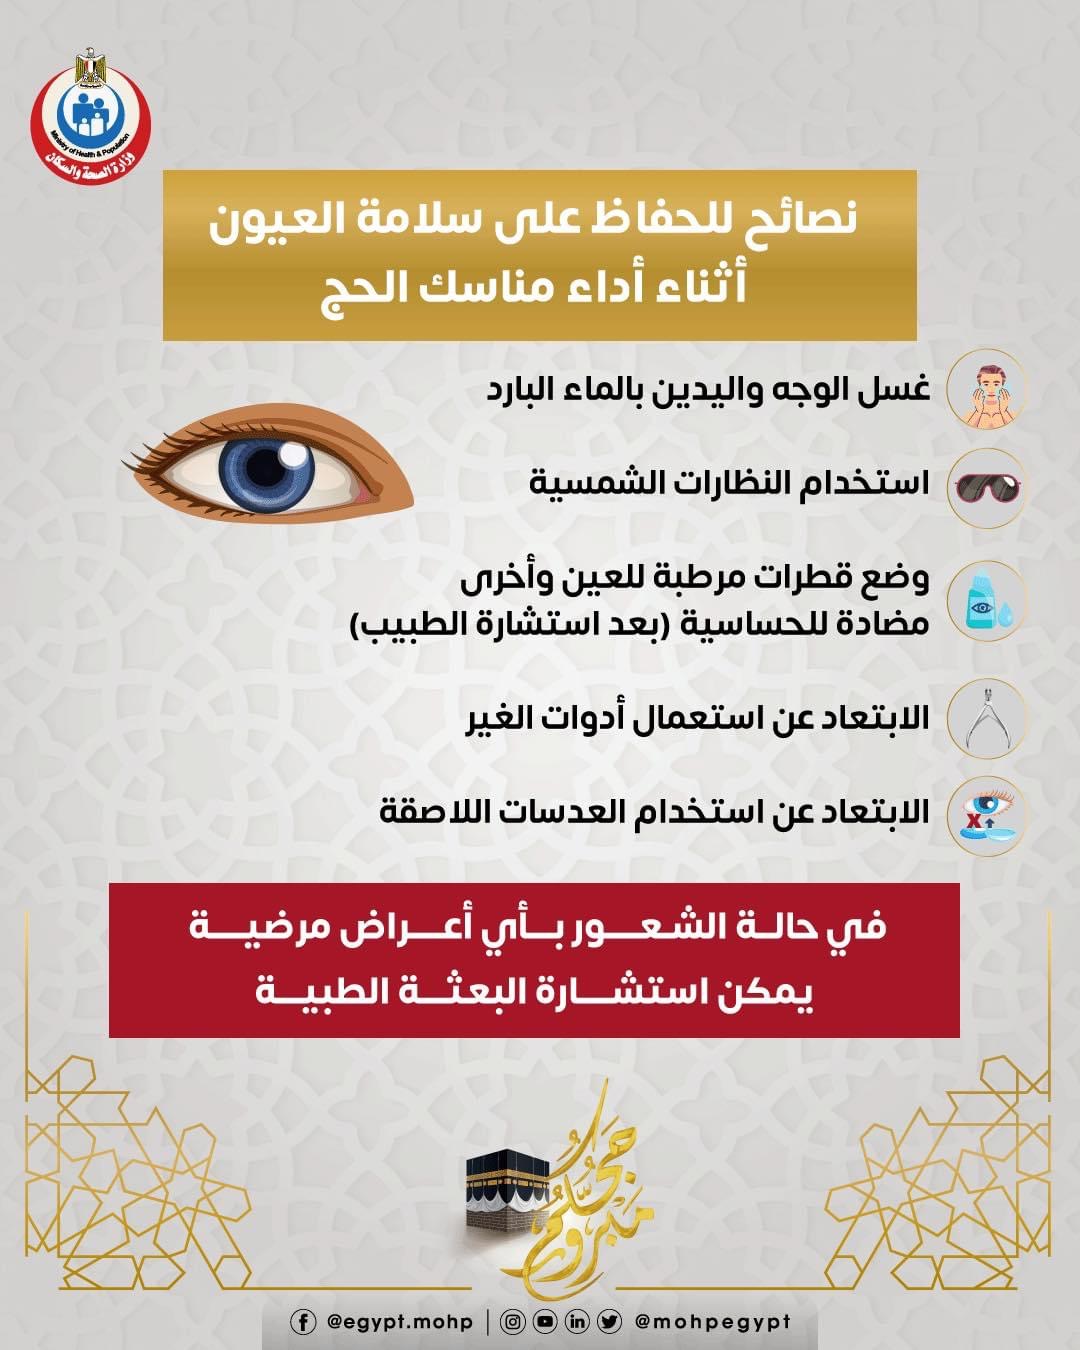 نصائح هامة للحفاظ على سلامة العيون أثناء الحج